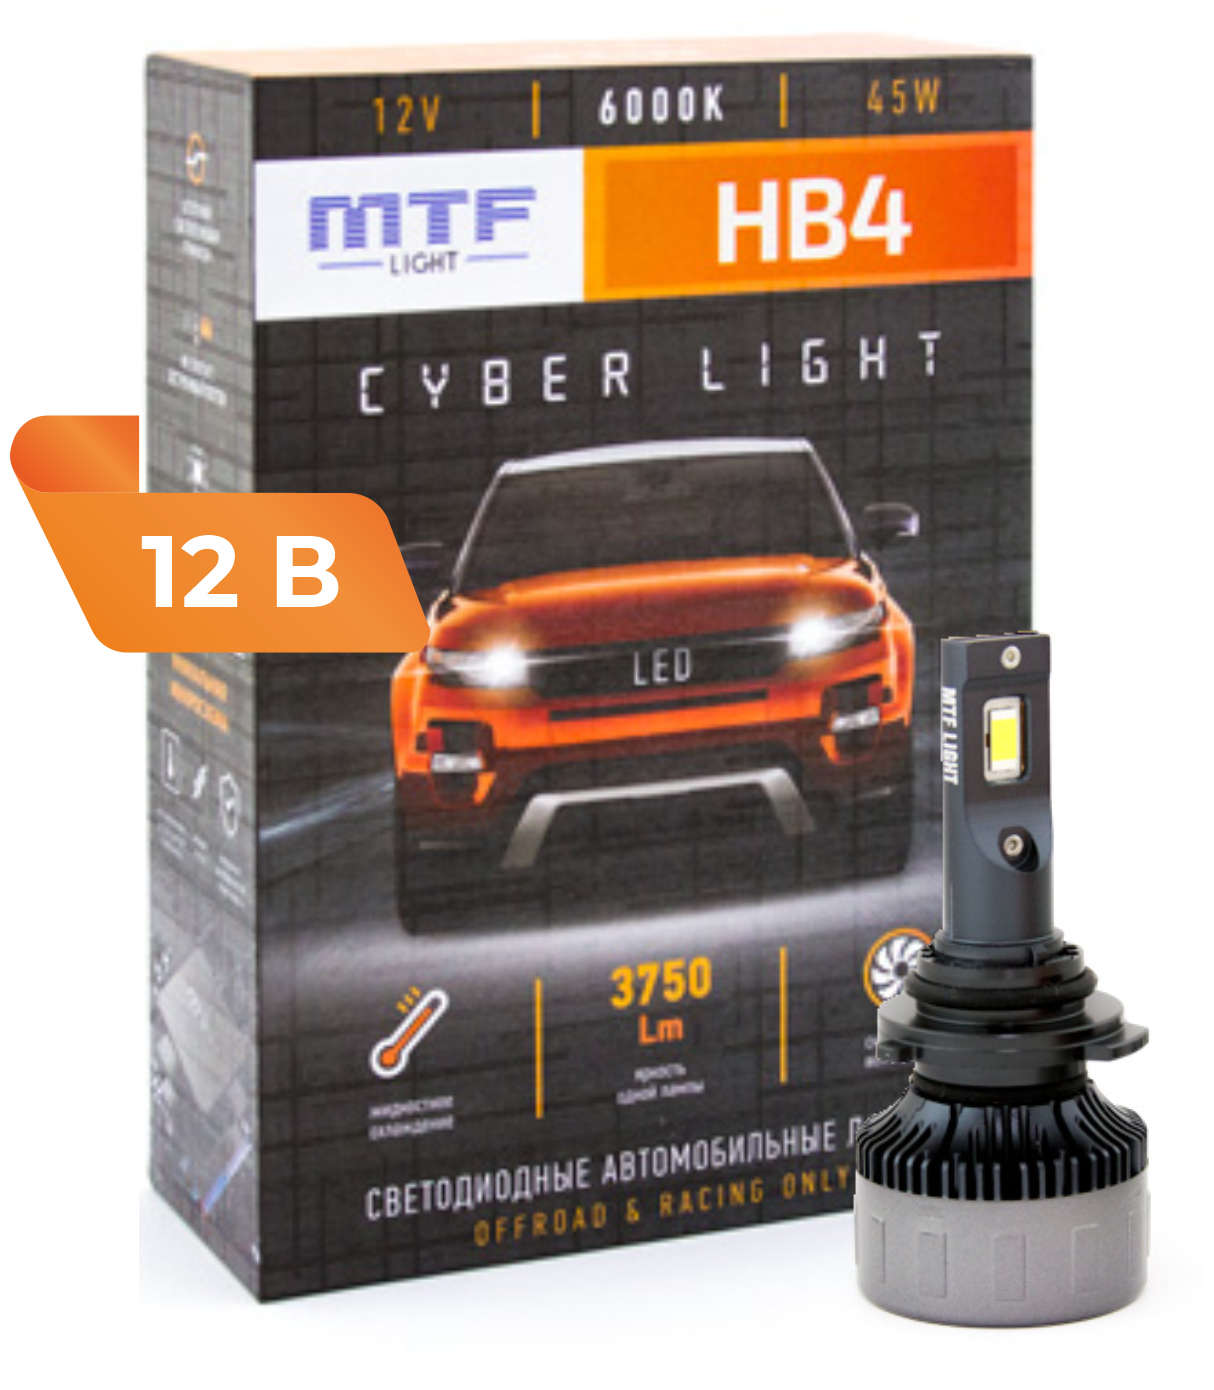 Светодиодные лампы MTF light HB4 Cyber Light 6000К Холодный Белый свет